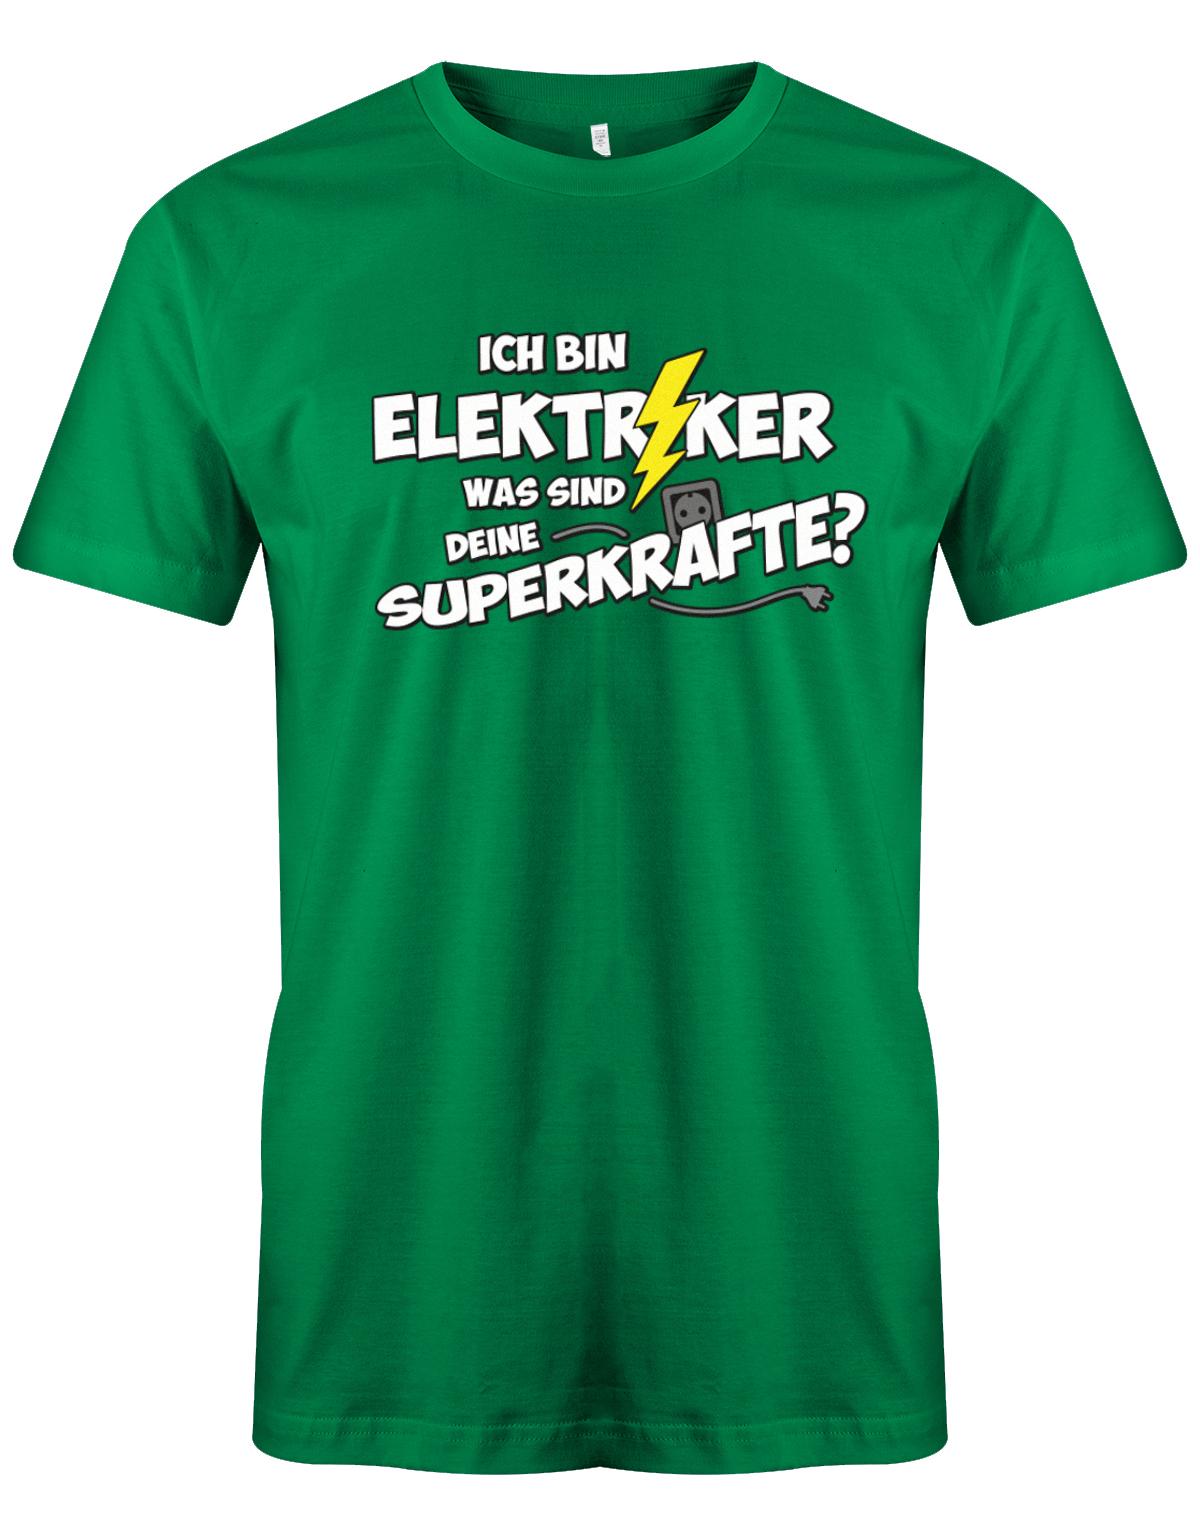 Elektriker Shirt - Ich bin Elektriker, was sind deine Superkräfte? Grün